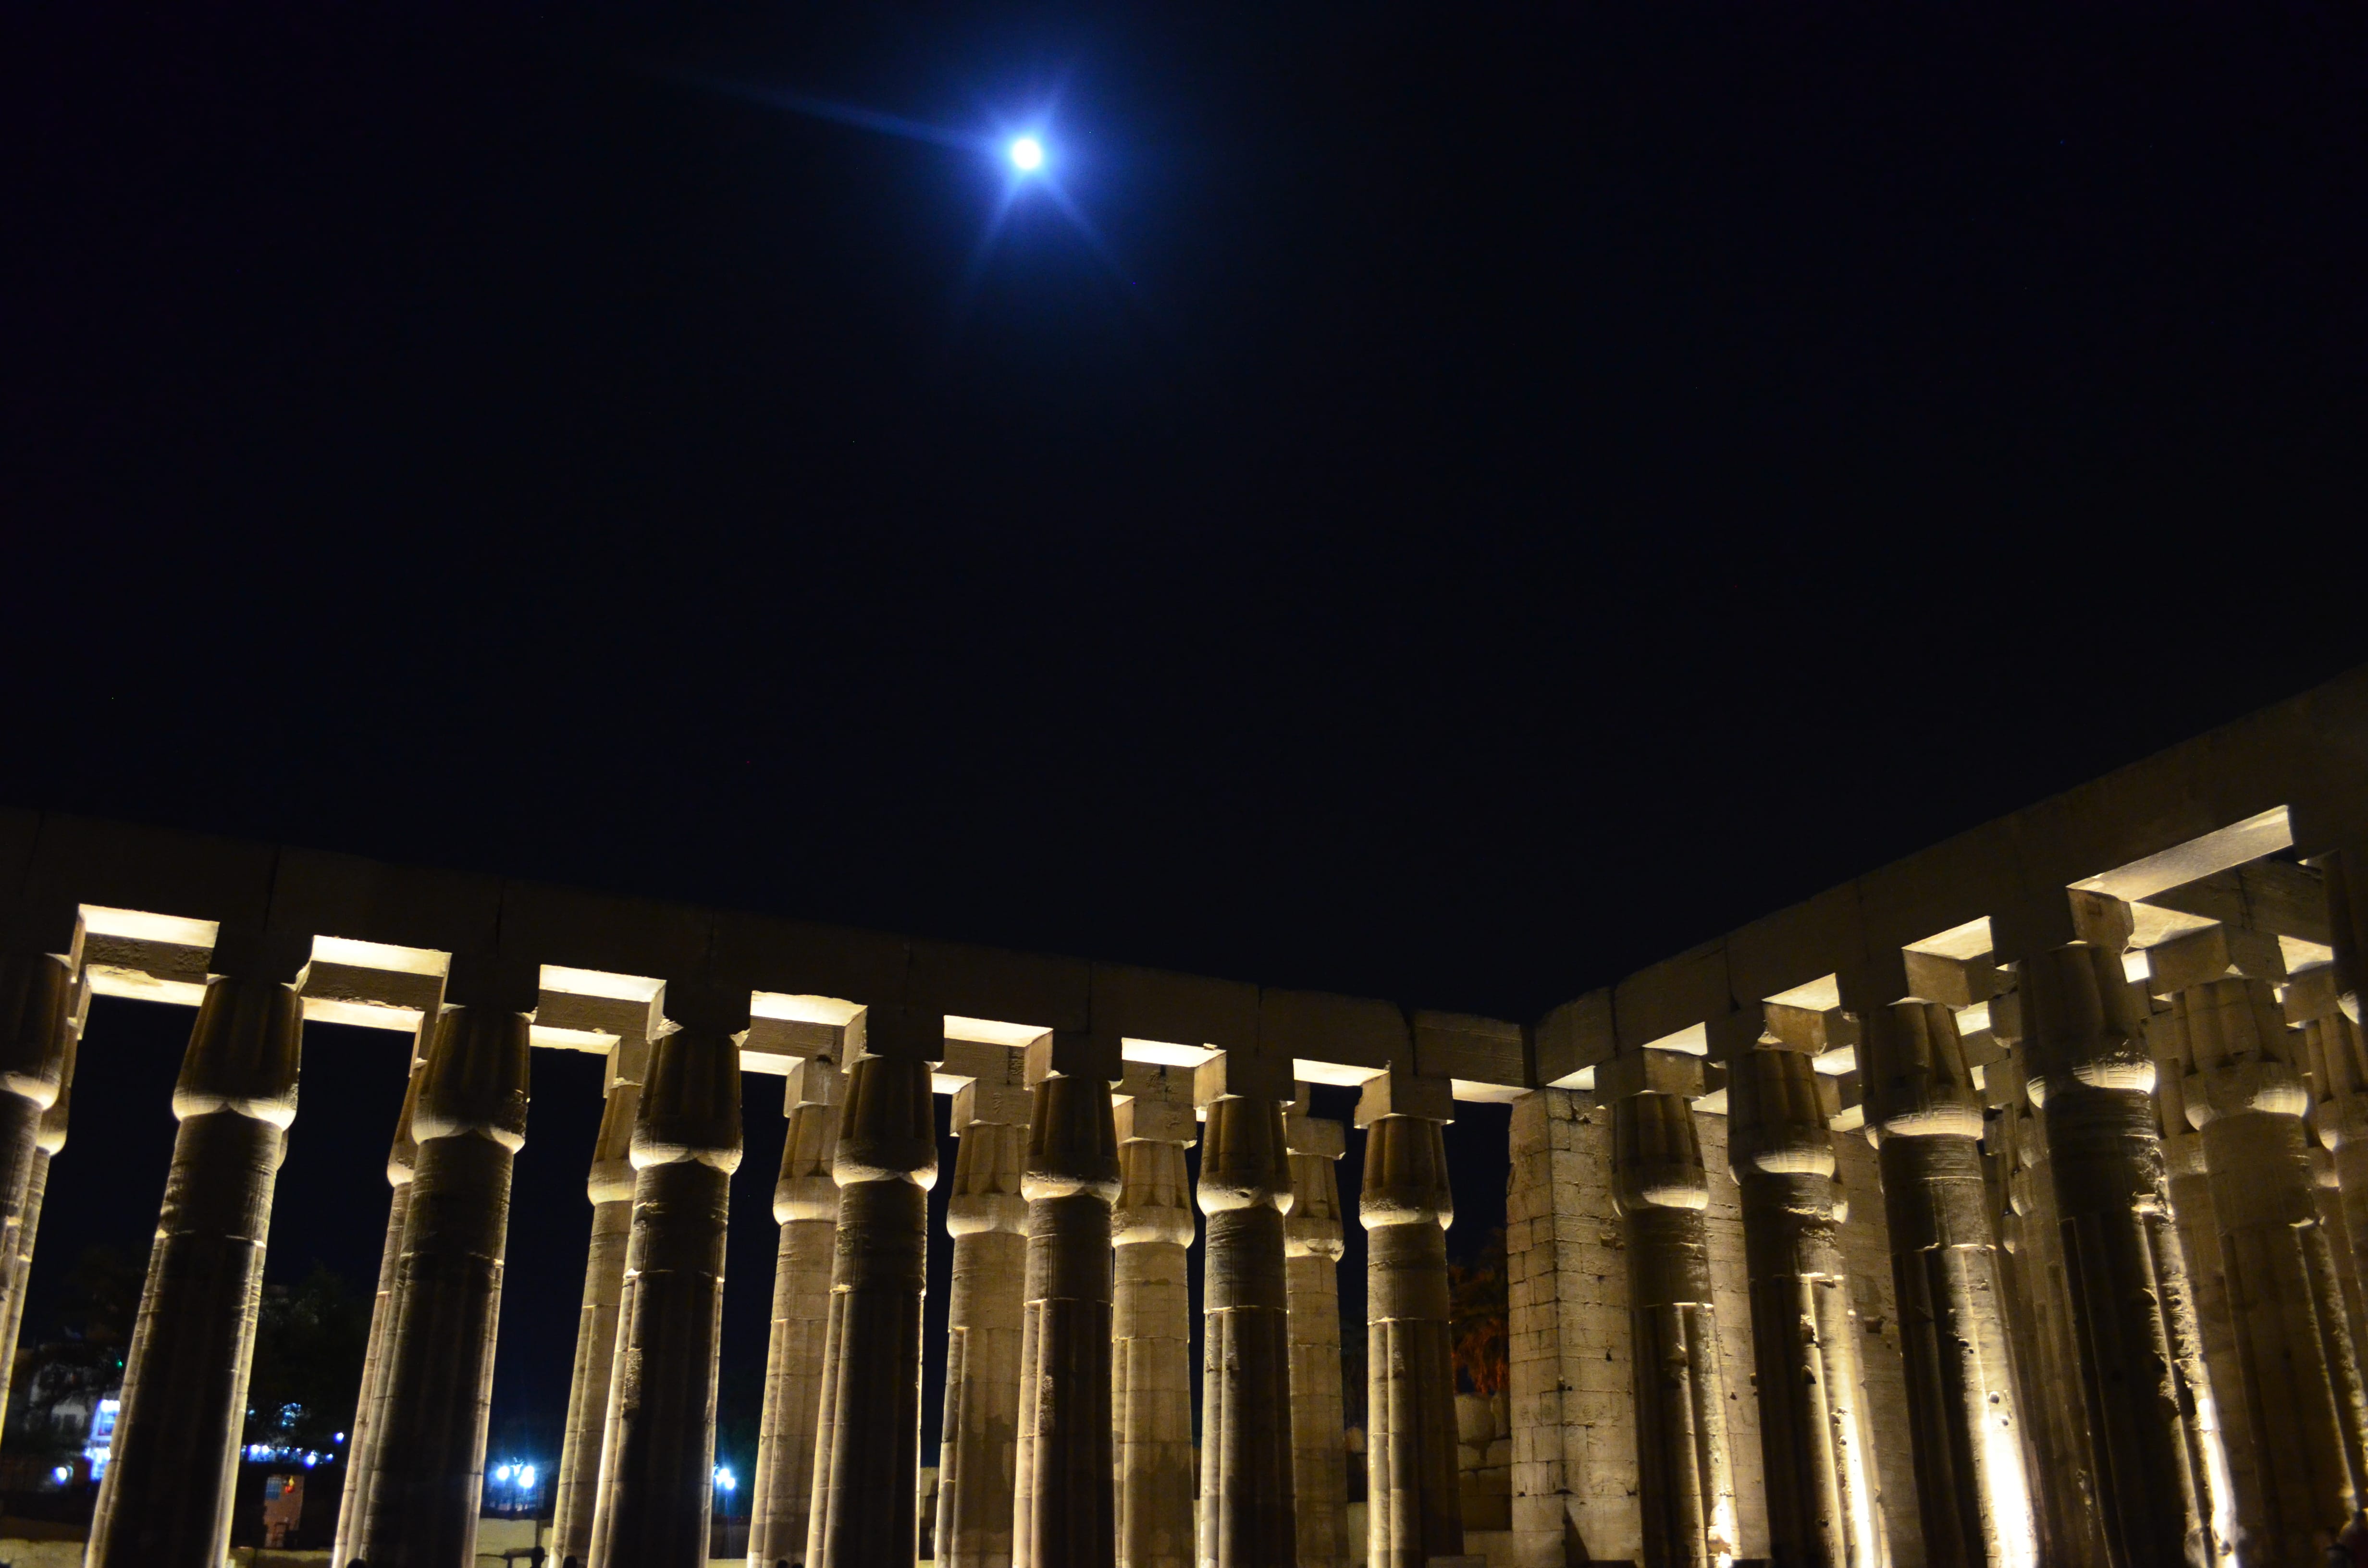 Vista de las columnas del templo de Luxor en Egitpo durante la noche